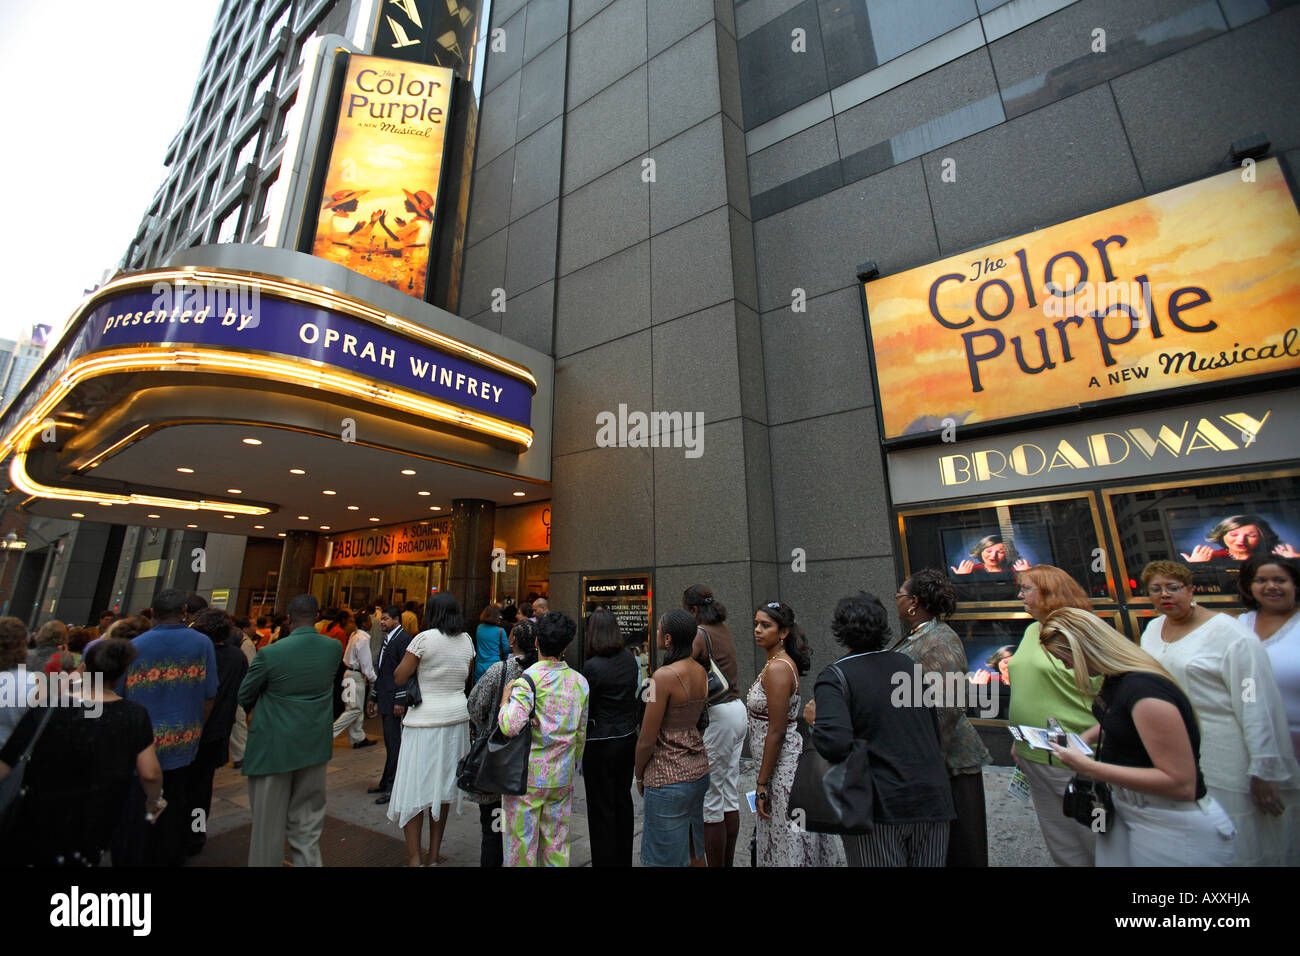 La couleur pourpre Théâtre de Broadway, Manhattan New York Banque D'Images